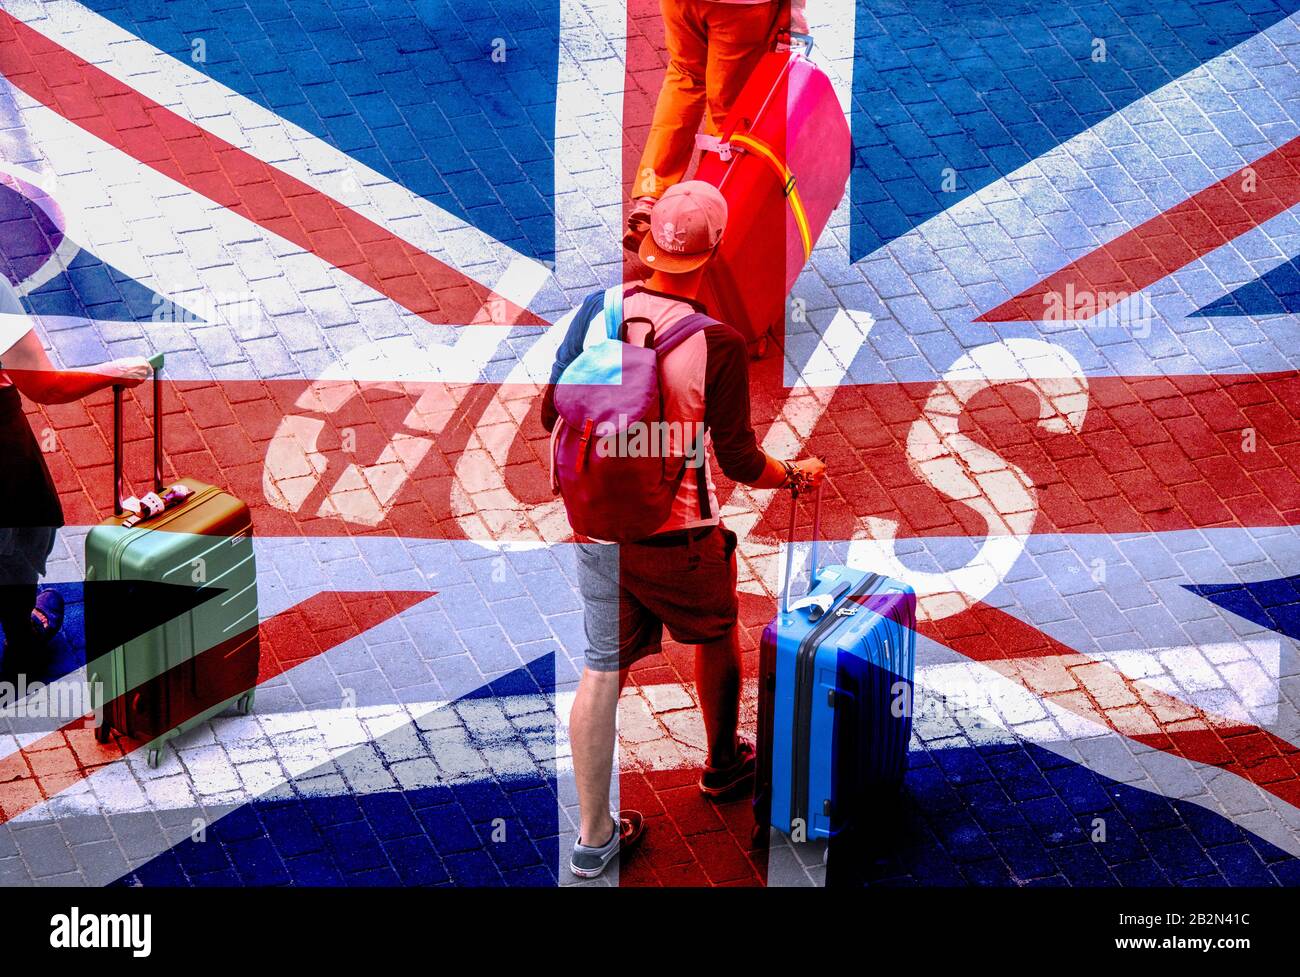 Turistas que se lleva el equipaje encima de la señal de stop pintado en la carretera. Bandera del Reino Unido Overlayed.Coronavirus, Brexit, viajes, turismo..., concepto de imagen. Foto de stock